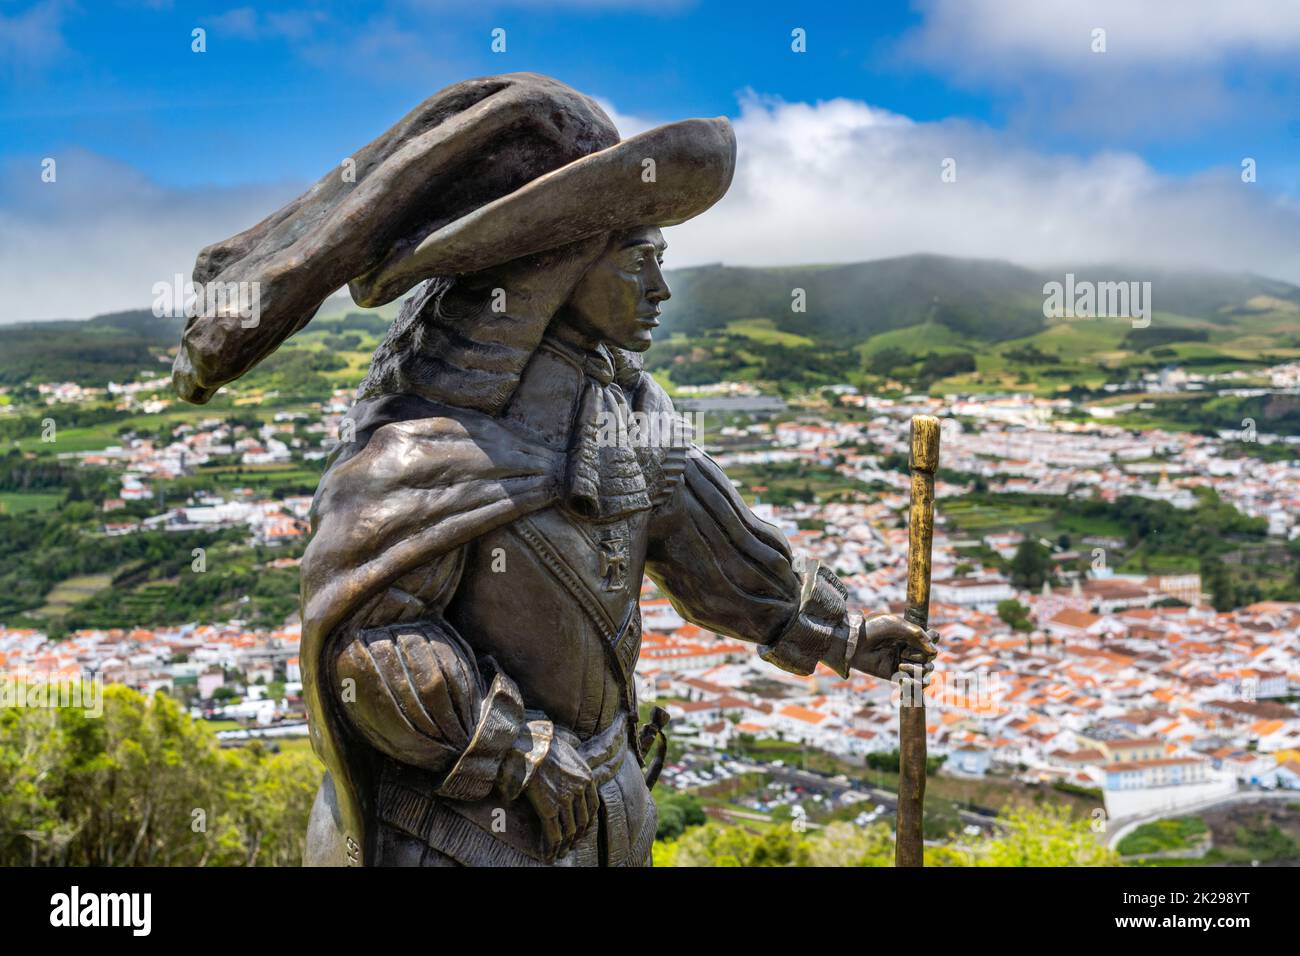 Estatua de Afonso VI Segundo Rey de Portugal en Monte Brasil con vista al centro histórico de la ciudad, playa pública llamada Praia de Angra do Heroismo abajo, en Angra do Heroismo, Isla Terceira, Azores, Portugal. Foto de stock